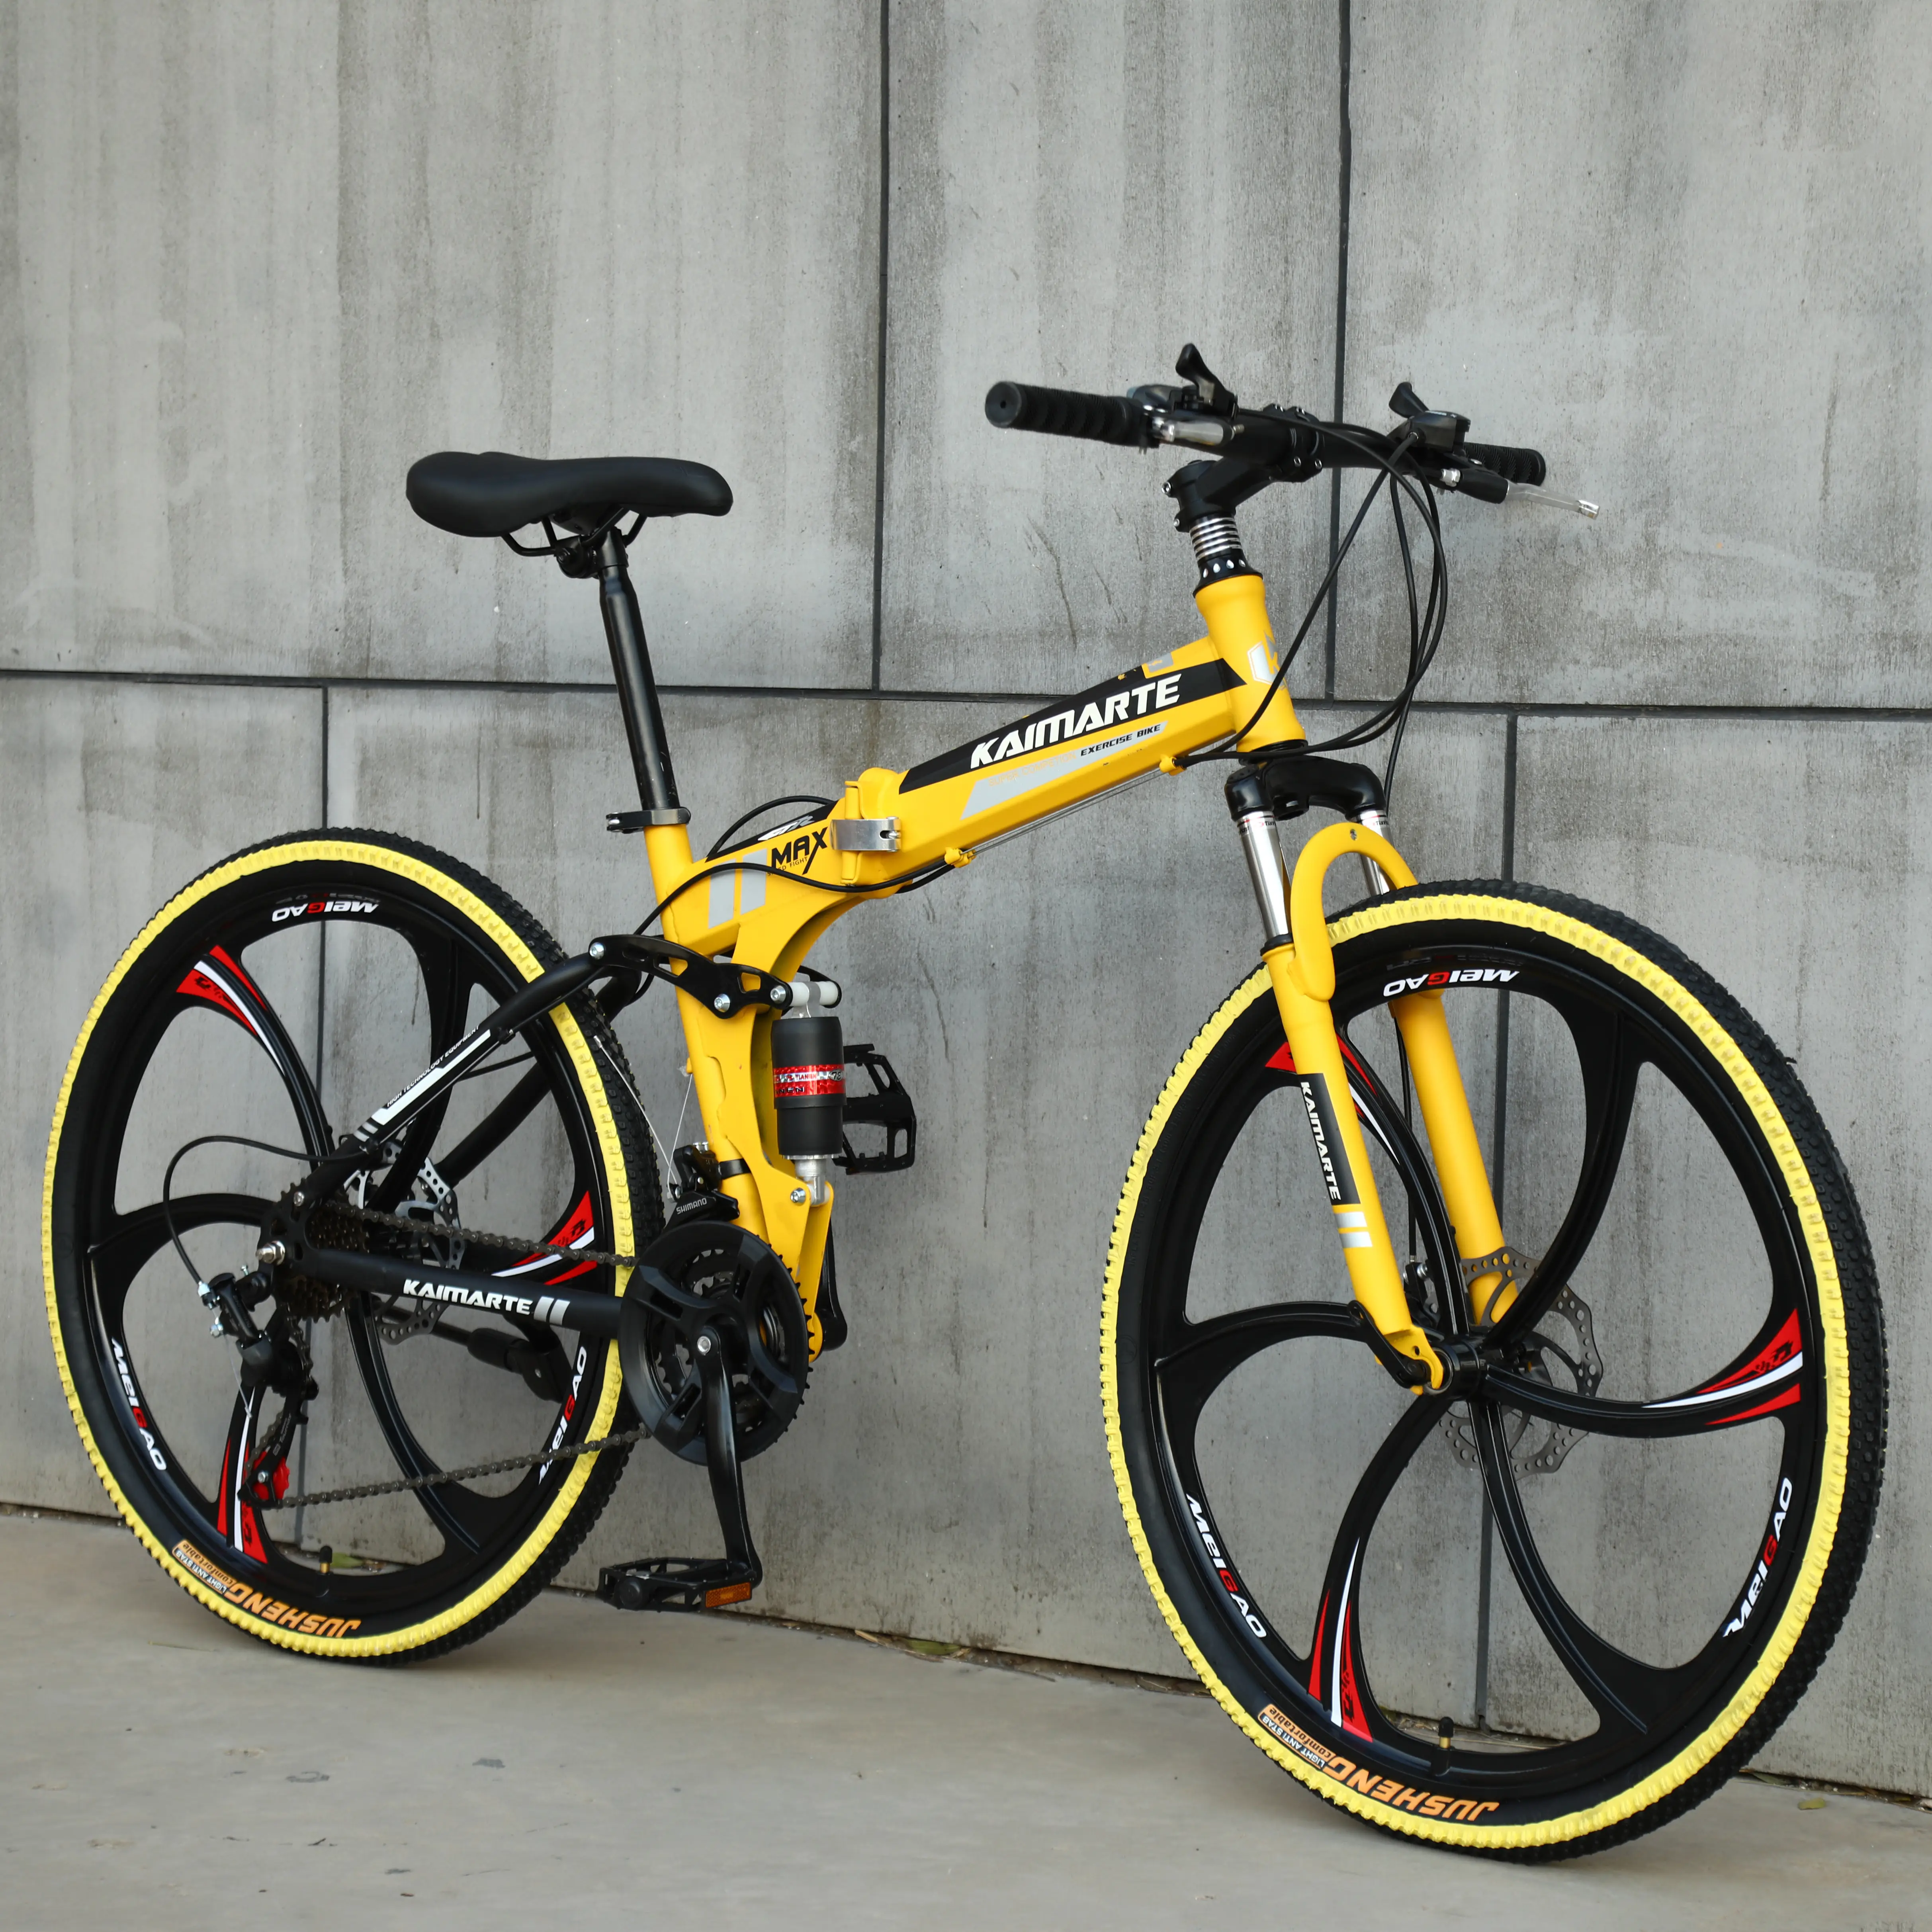 Bicicleta de Montaña plegable de alta calidad, barata, de 24, 26, 27,5 y 29 pulgadas, hecha en fábrica china